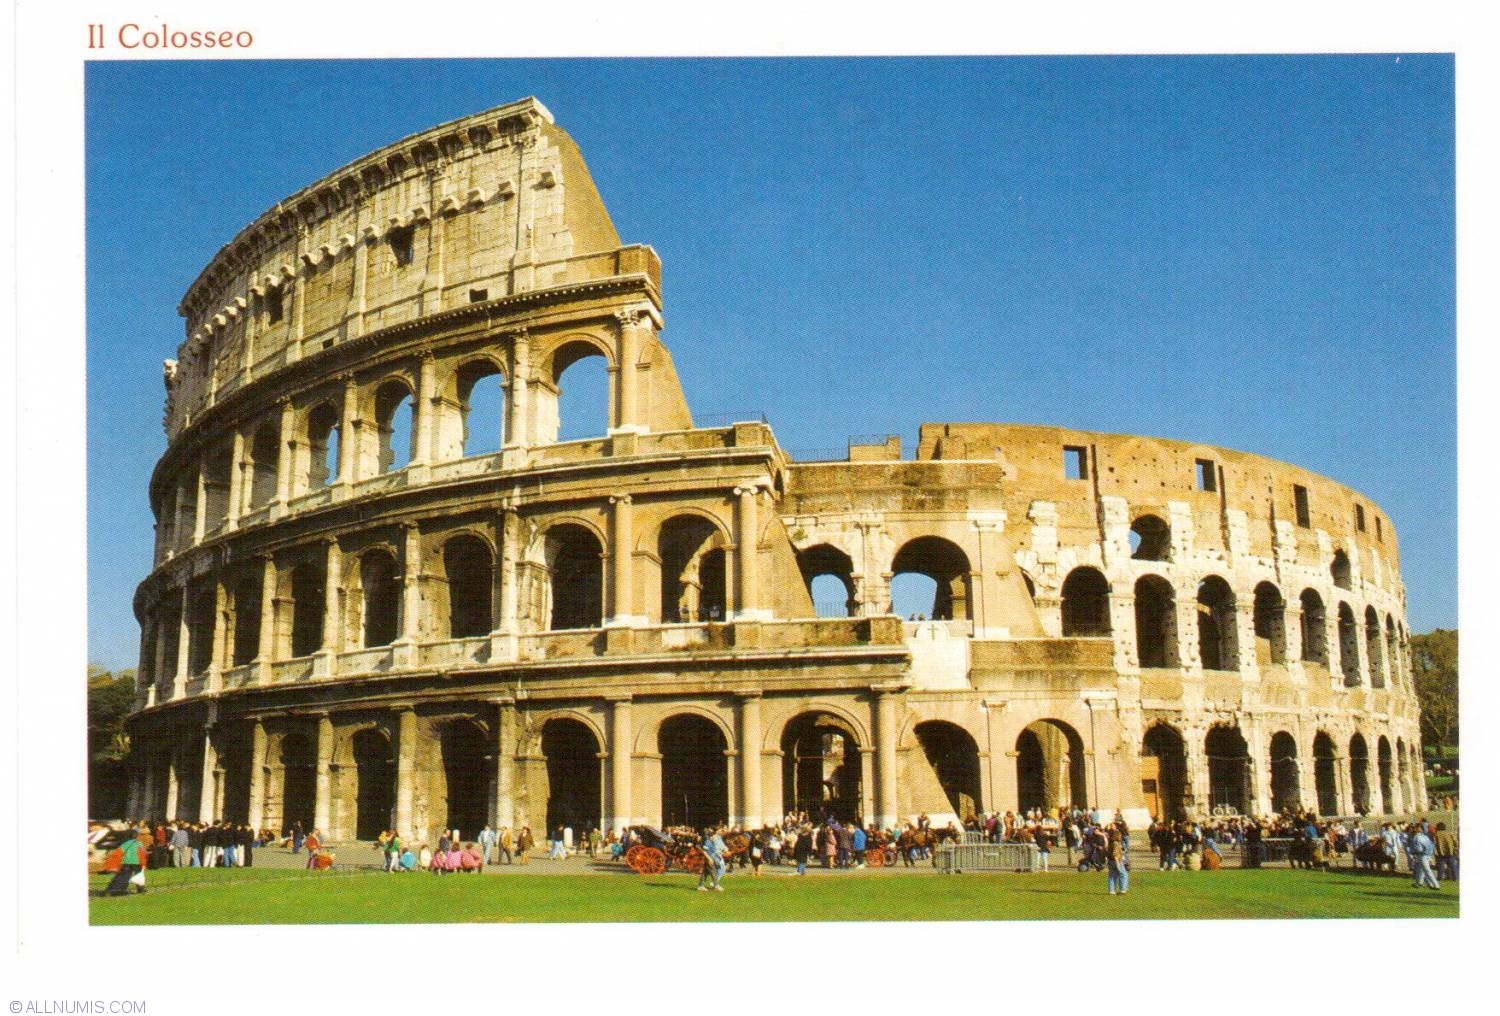 Rome - Colosseum (Il Colosseo), Rome - Colosseum (Il Colosseo) - Italy